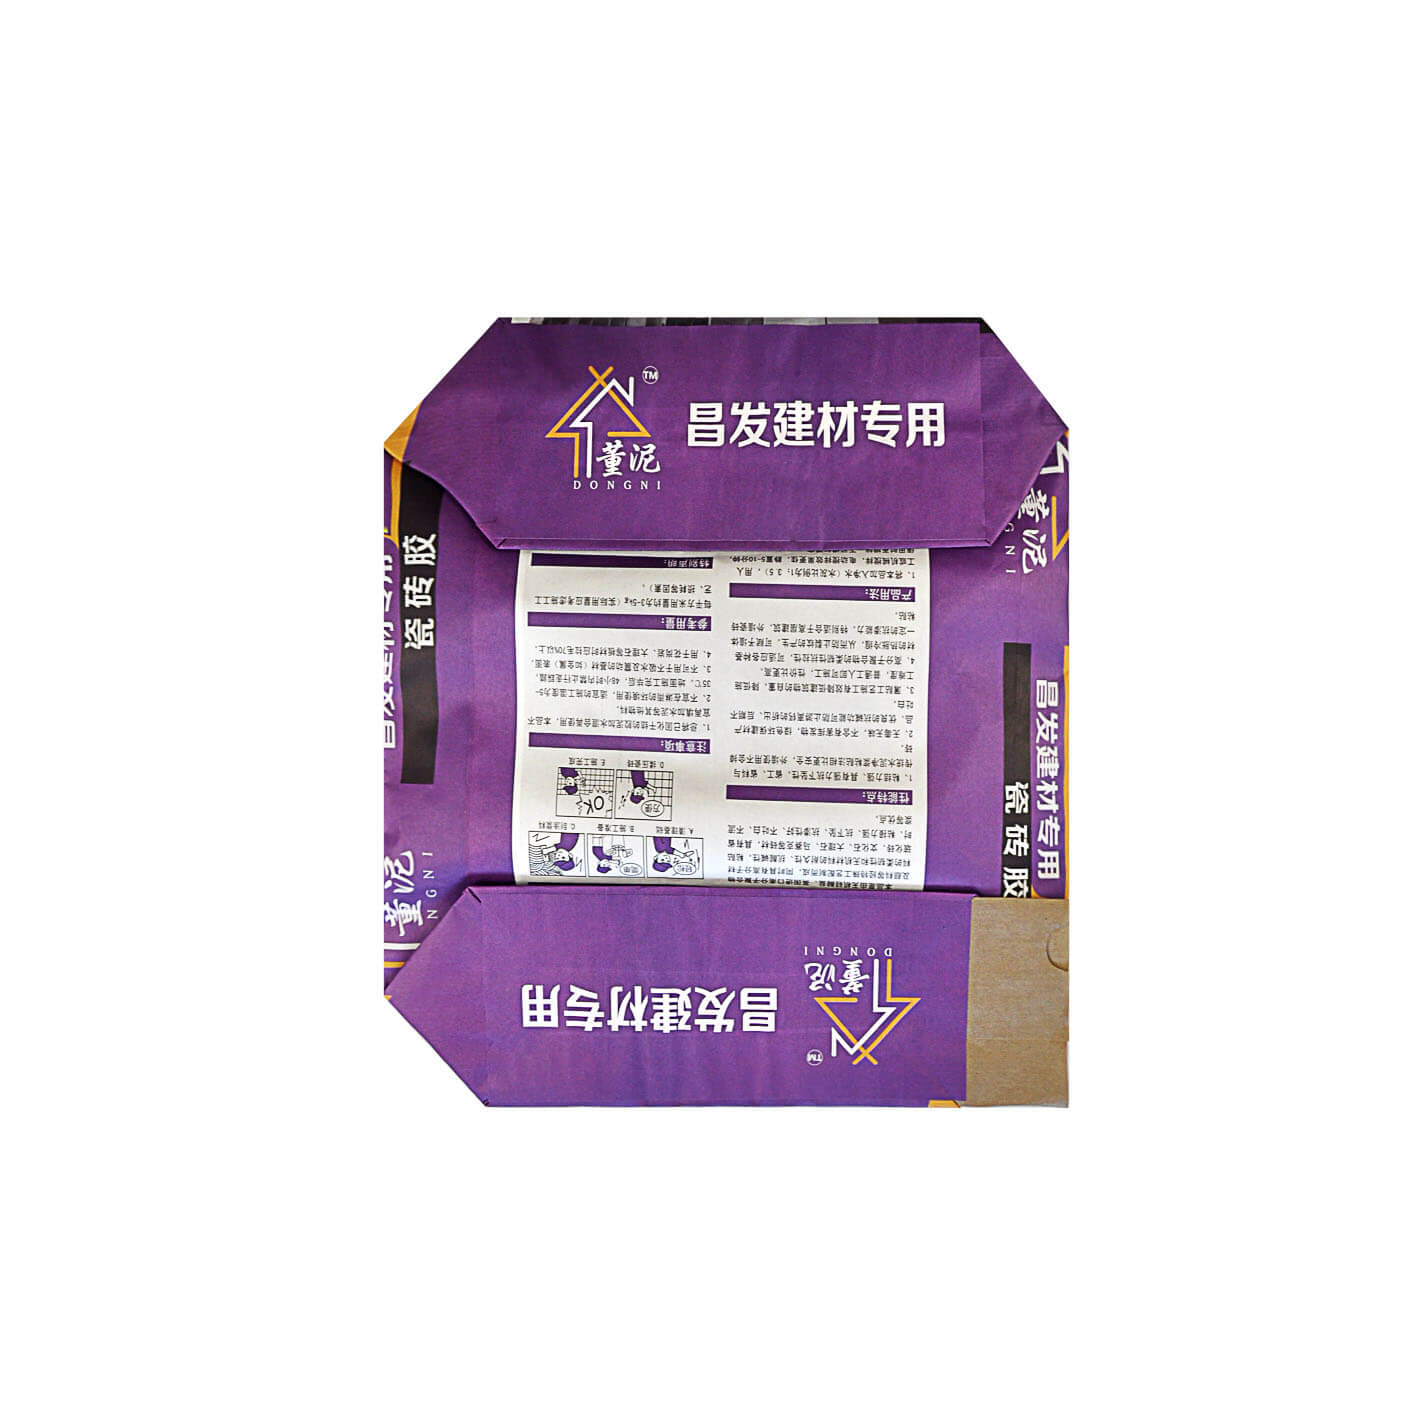 LKBAGD002-multi-wall paper valve bag